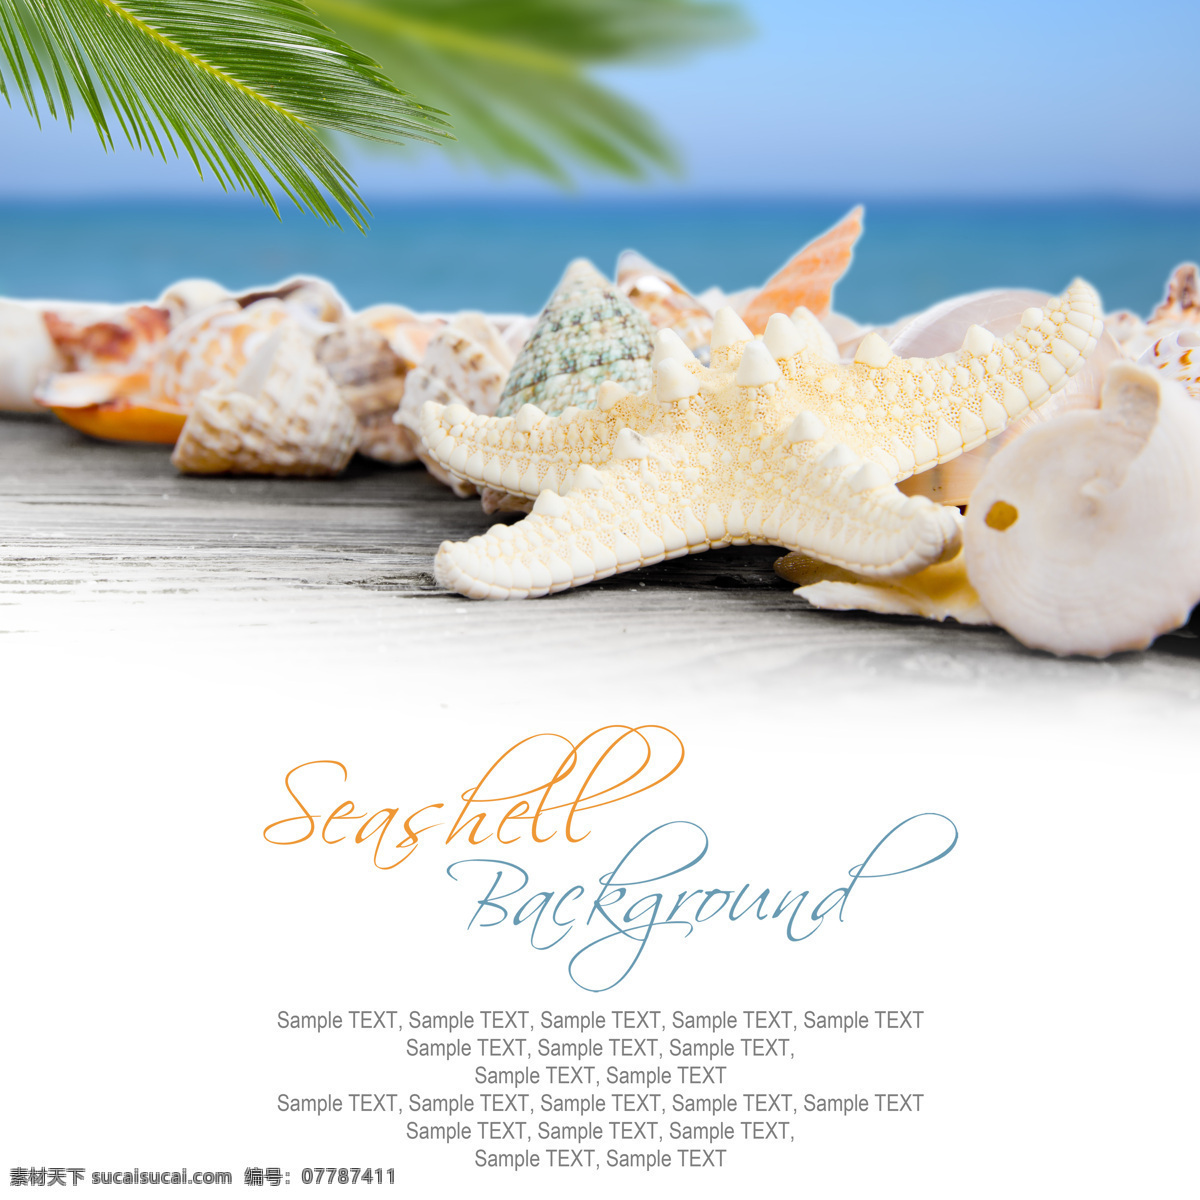 椰子树 海螺 海洋 贝壳 海洋生物 沙滩 海滩 沙子 夏日海洋风景 海洋海边 大海图片 风景图片